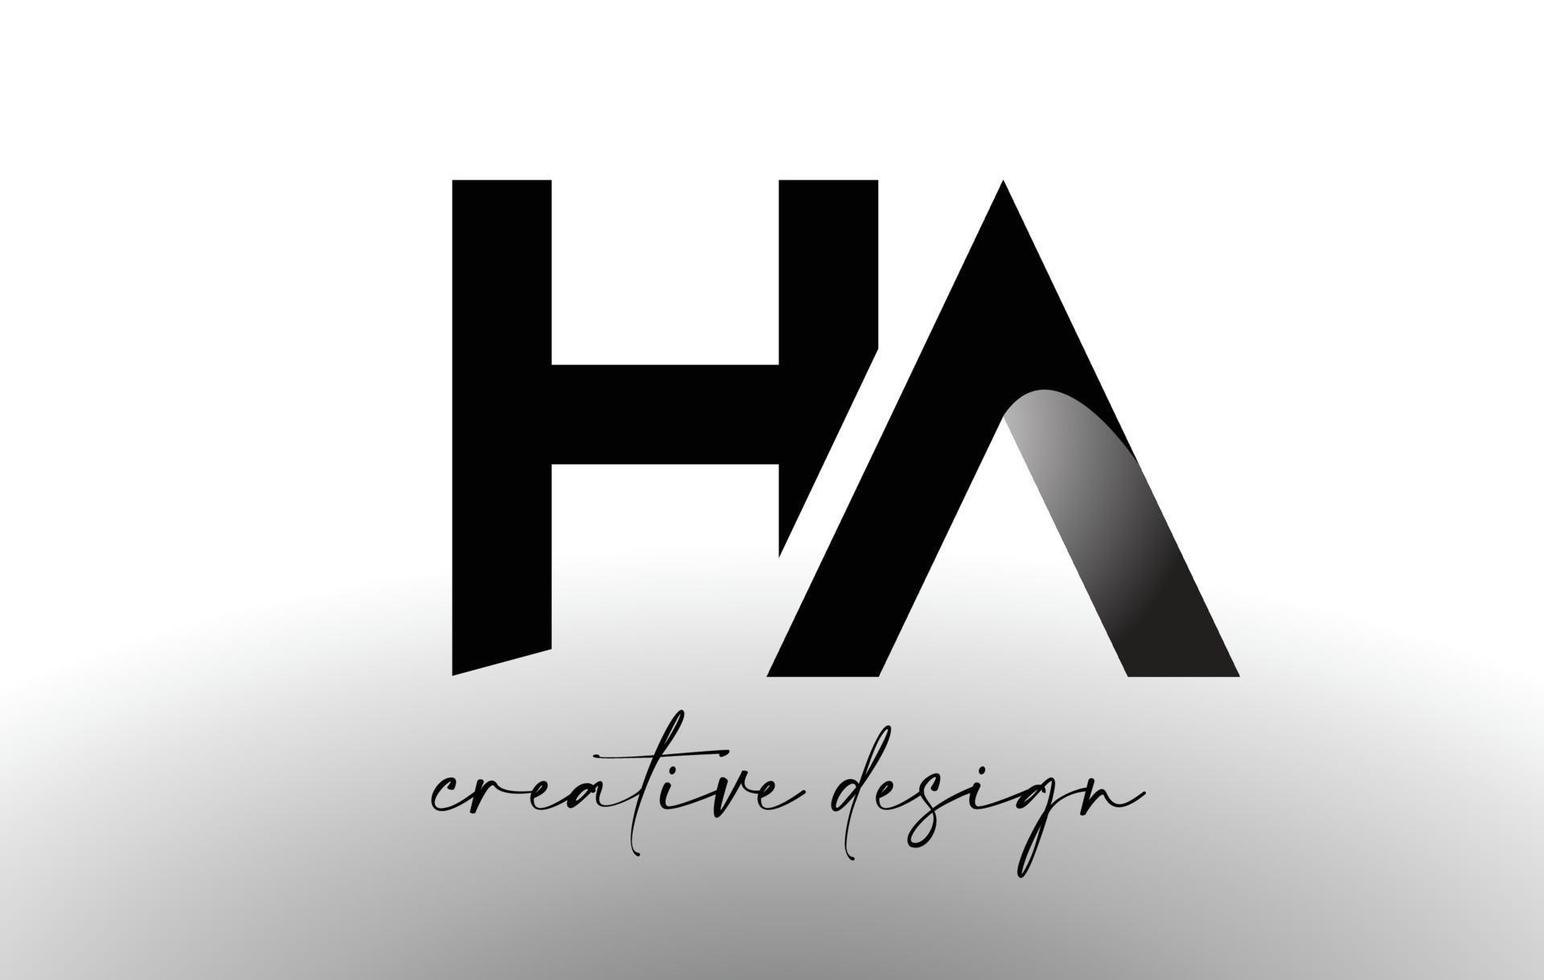 diseño de logotipo de letra ha con aspecto minimalista elegante. vector de icono de ha con aspecto moderno de diseño creativo.